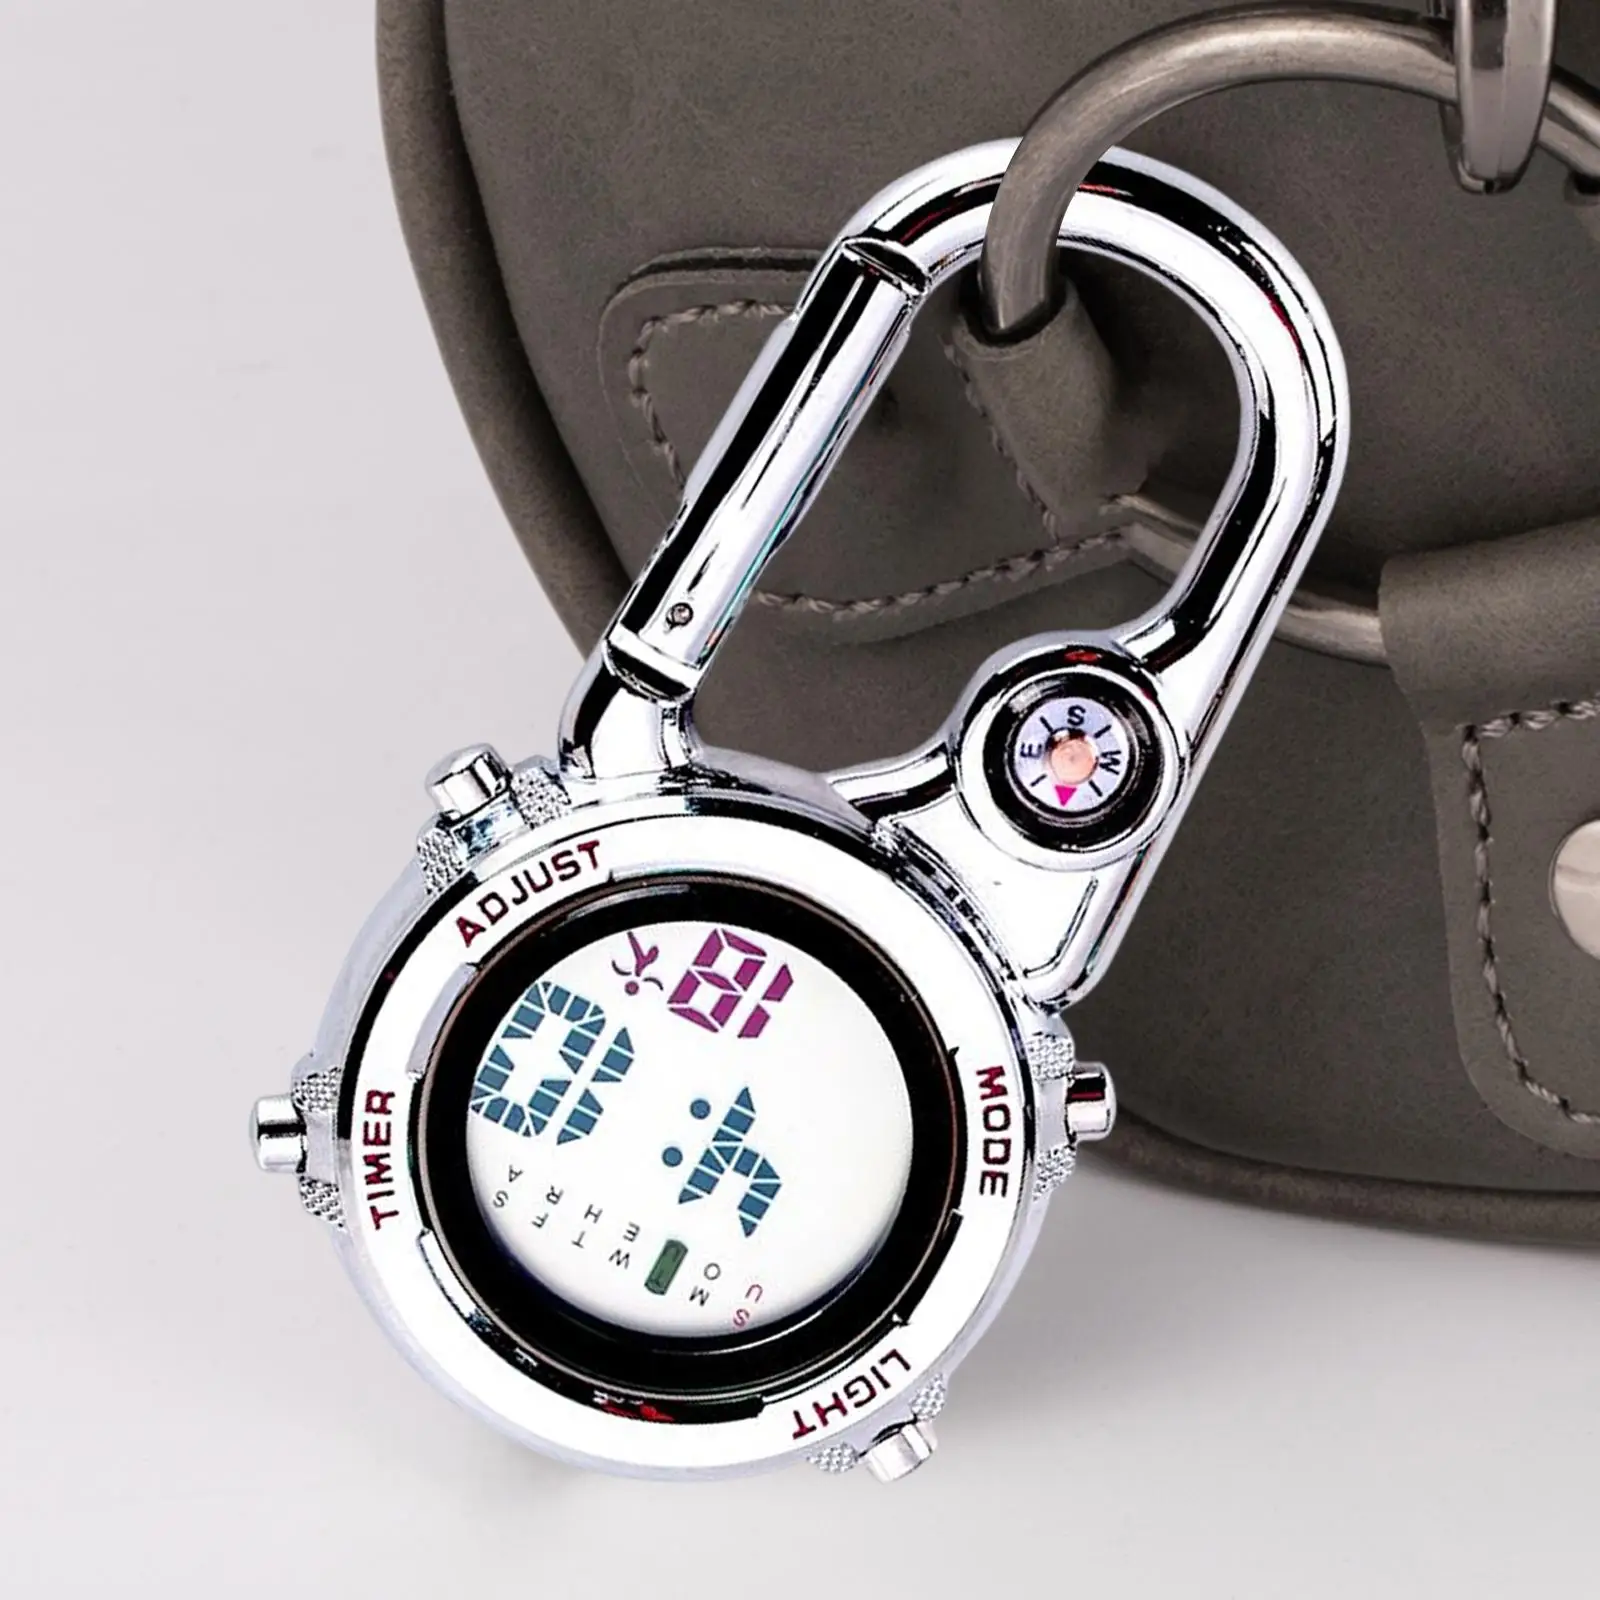 Digital Carabiner Watch Backpack Watch Luminous for Outdoor Activities Home